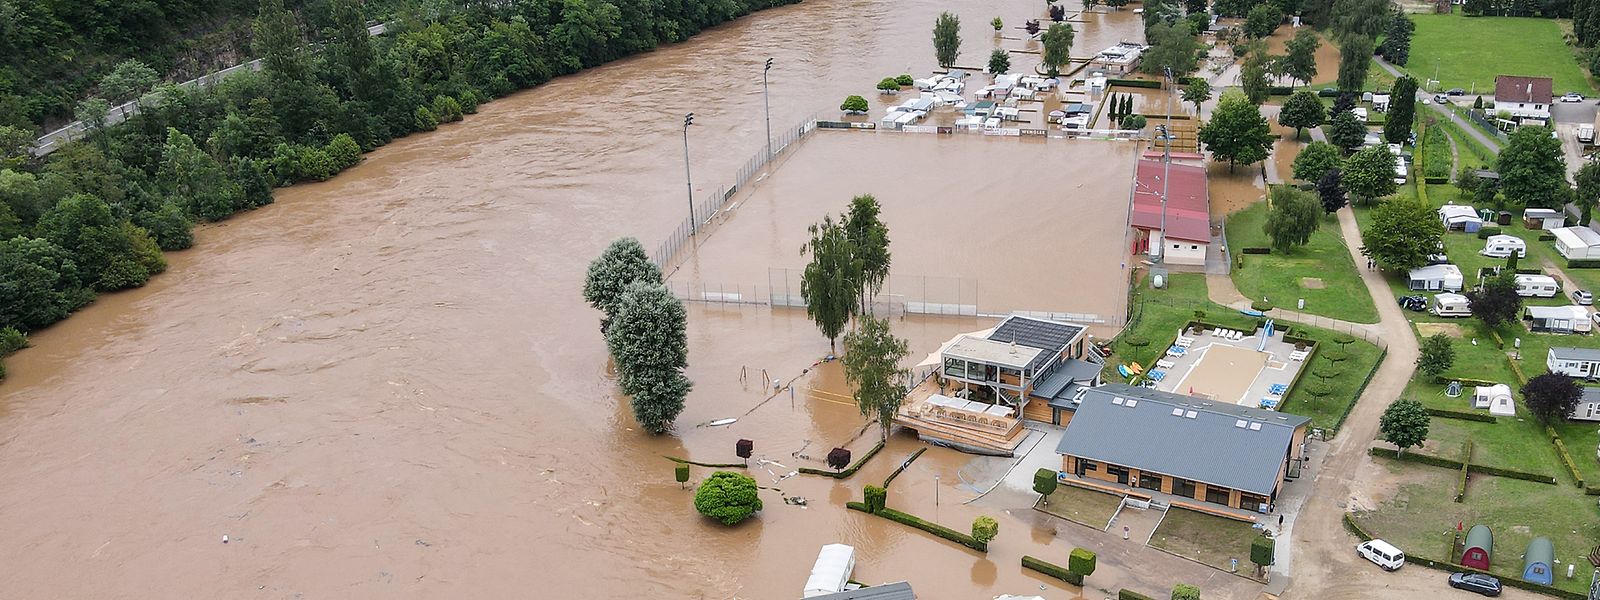 Les inondations du 14 juillet 2021 ont causé des dégâts de plusieurs millions d'euros au Luxembourg. Le fait qu'aucune personne n'ait perdu la vie est un miracle.